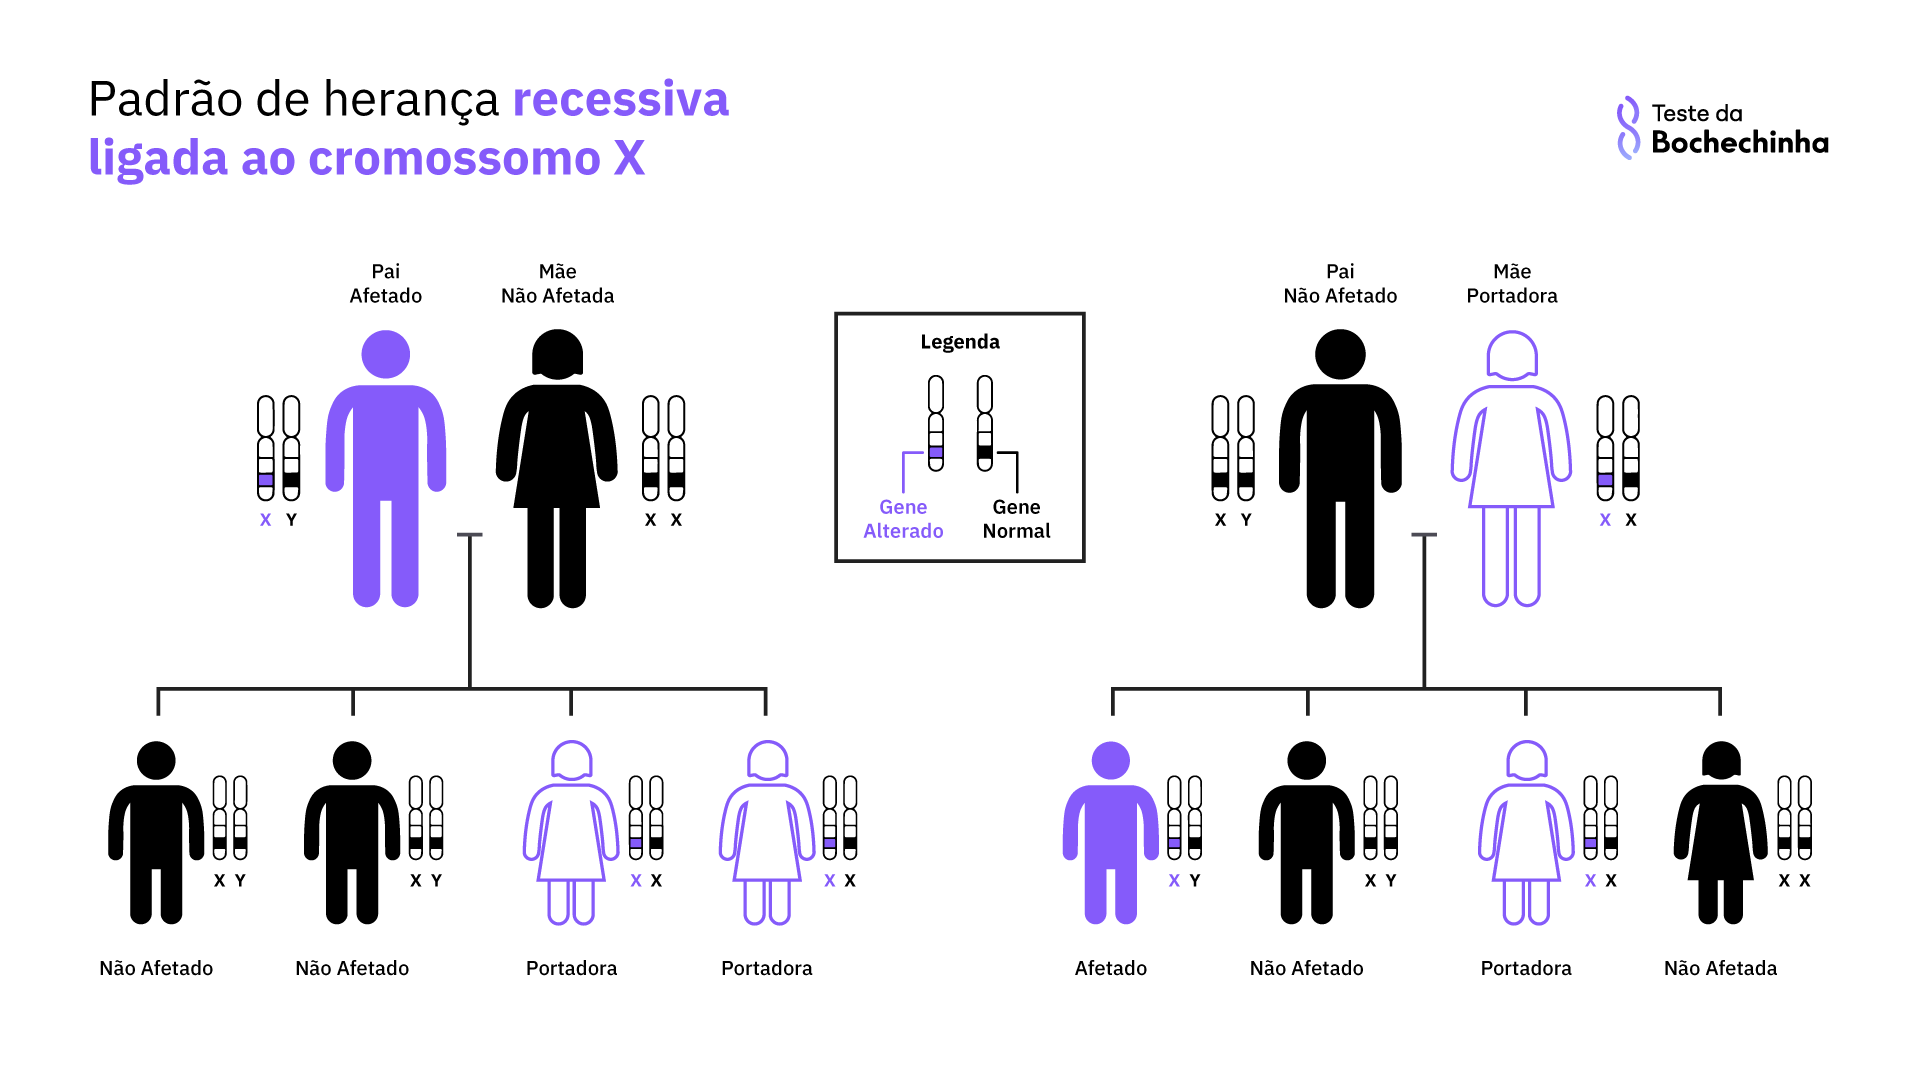 heredograma do padrão de herança recessiva ligada ao cromossomo X